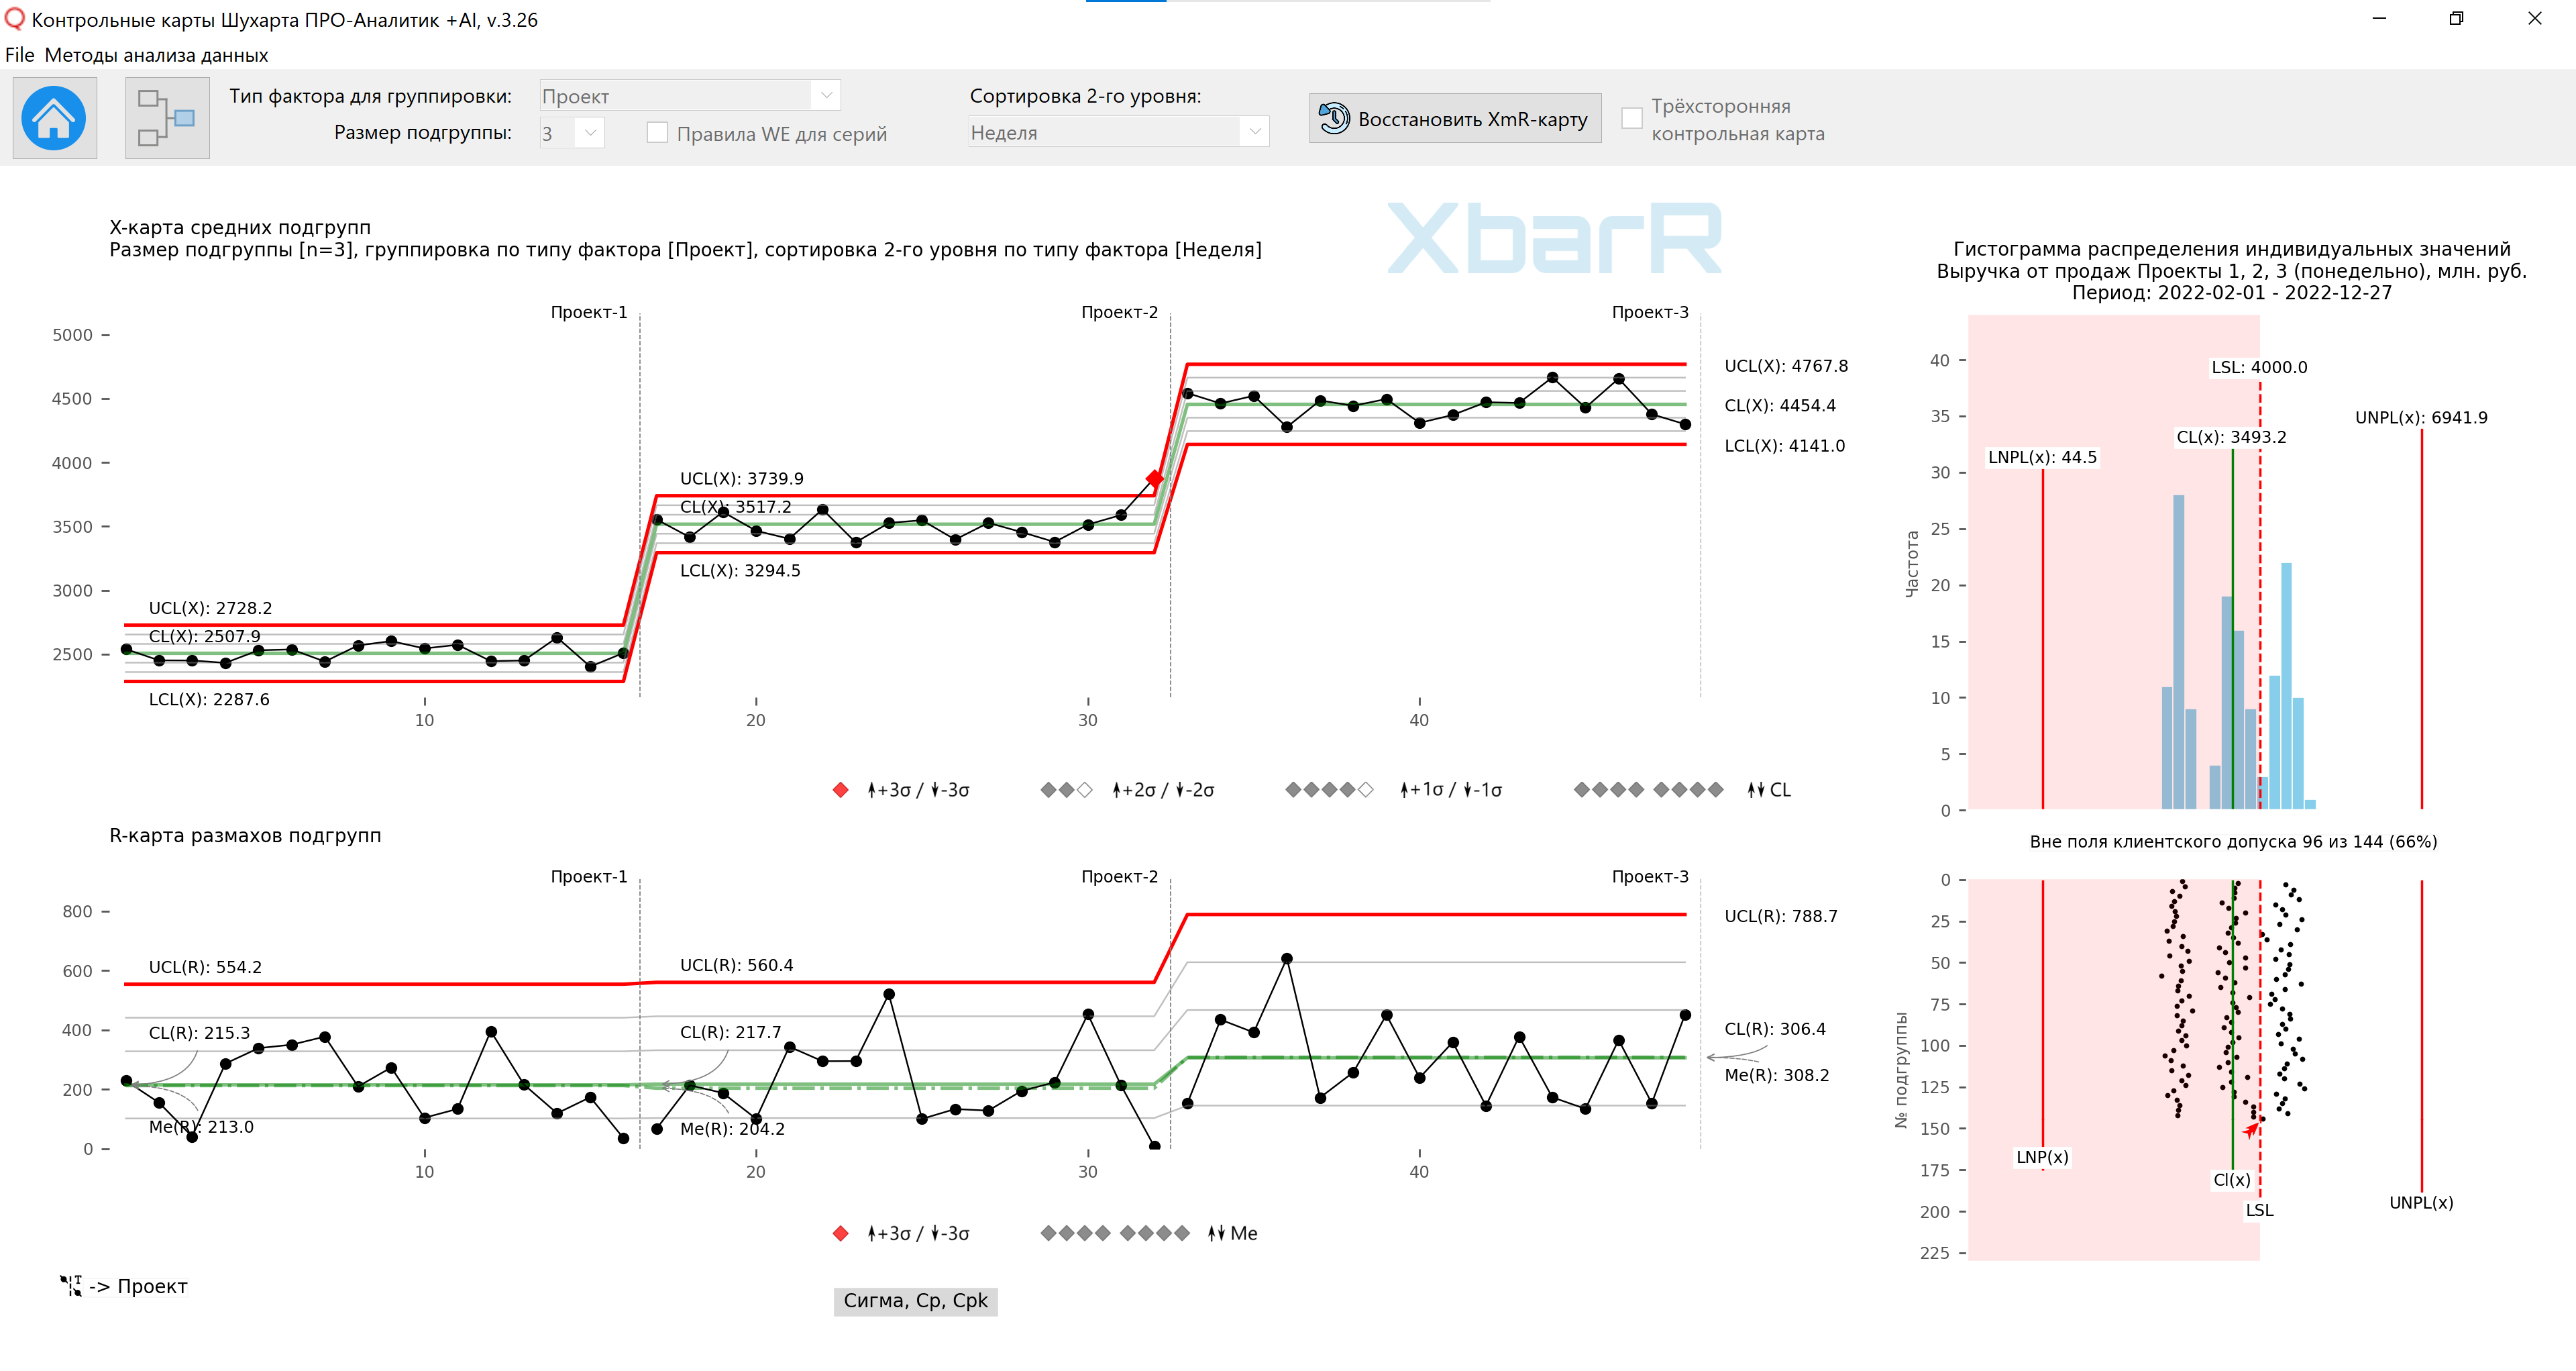 مخطط التحكم XbarR لوسائل المجموعة الفرعية ونطاقاتها للتجميع العقلاني للبيانات